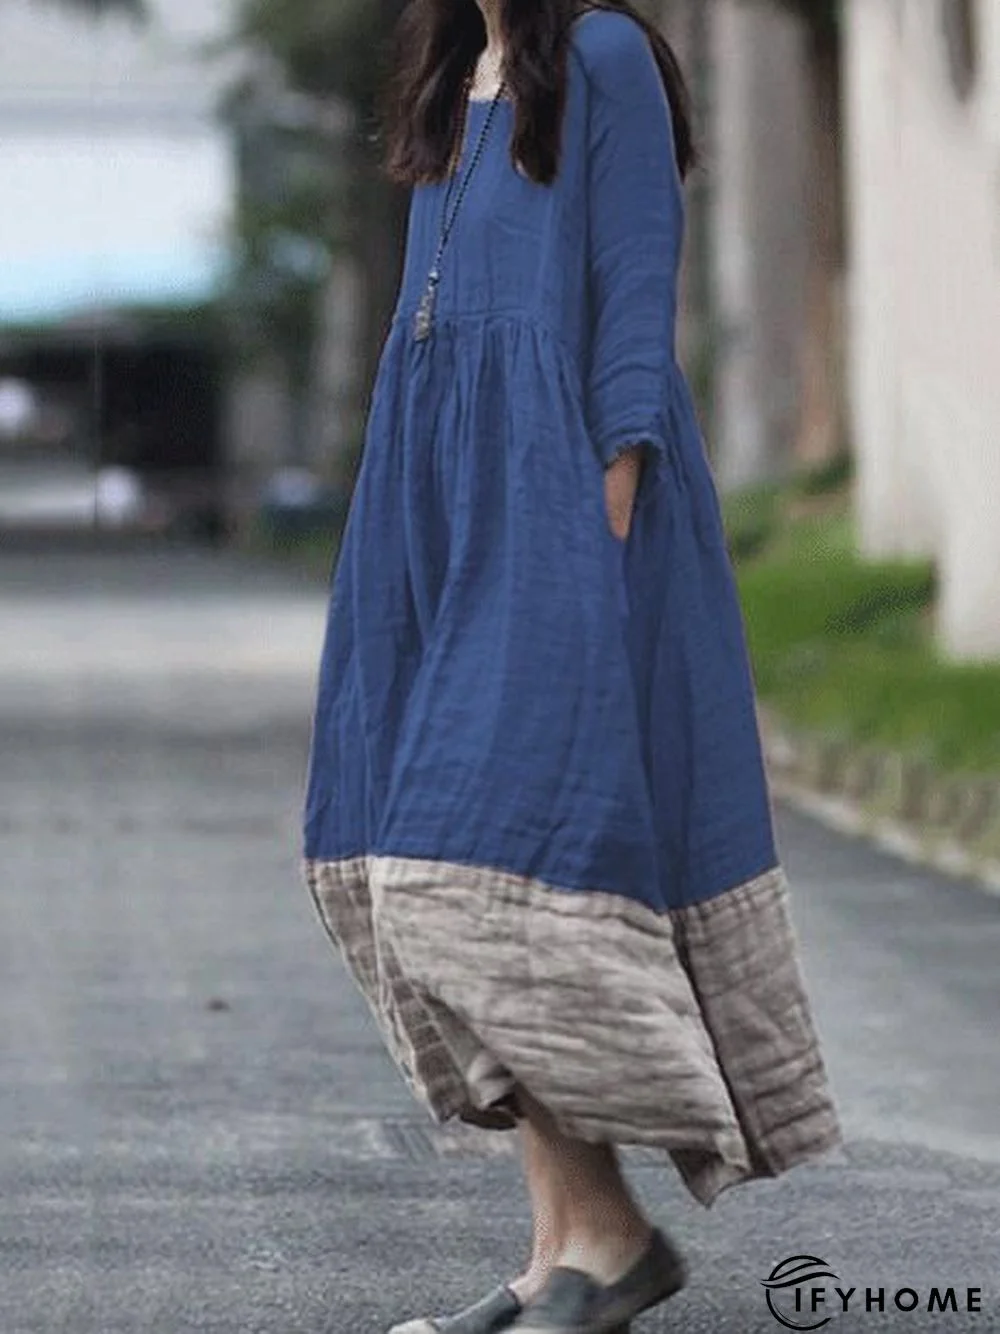 zolucky Women Causal Dress Crew Neck Long Sleeve Maxi Knitting Dress | IFYHOME